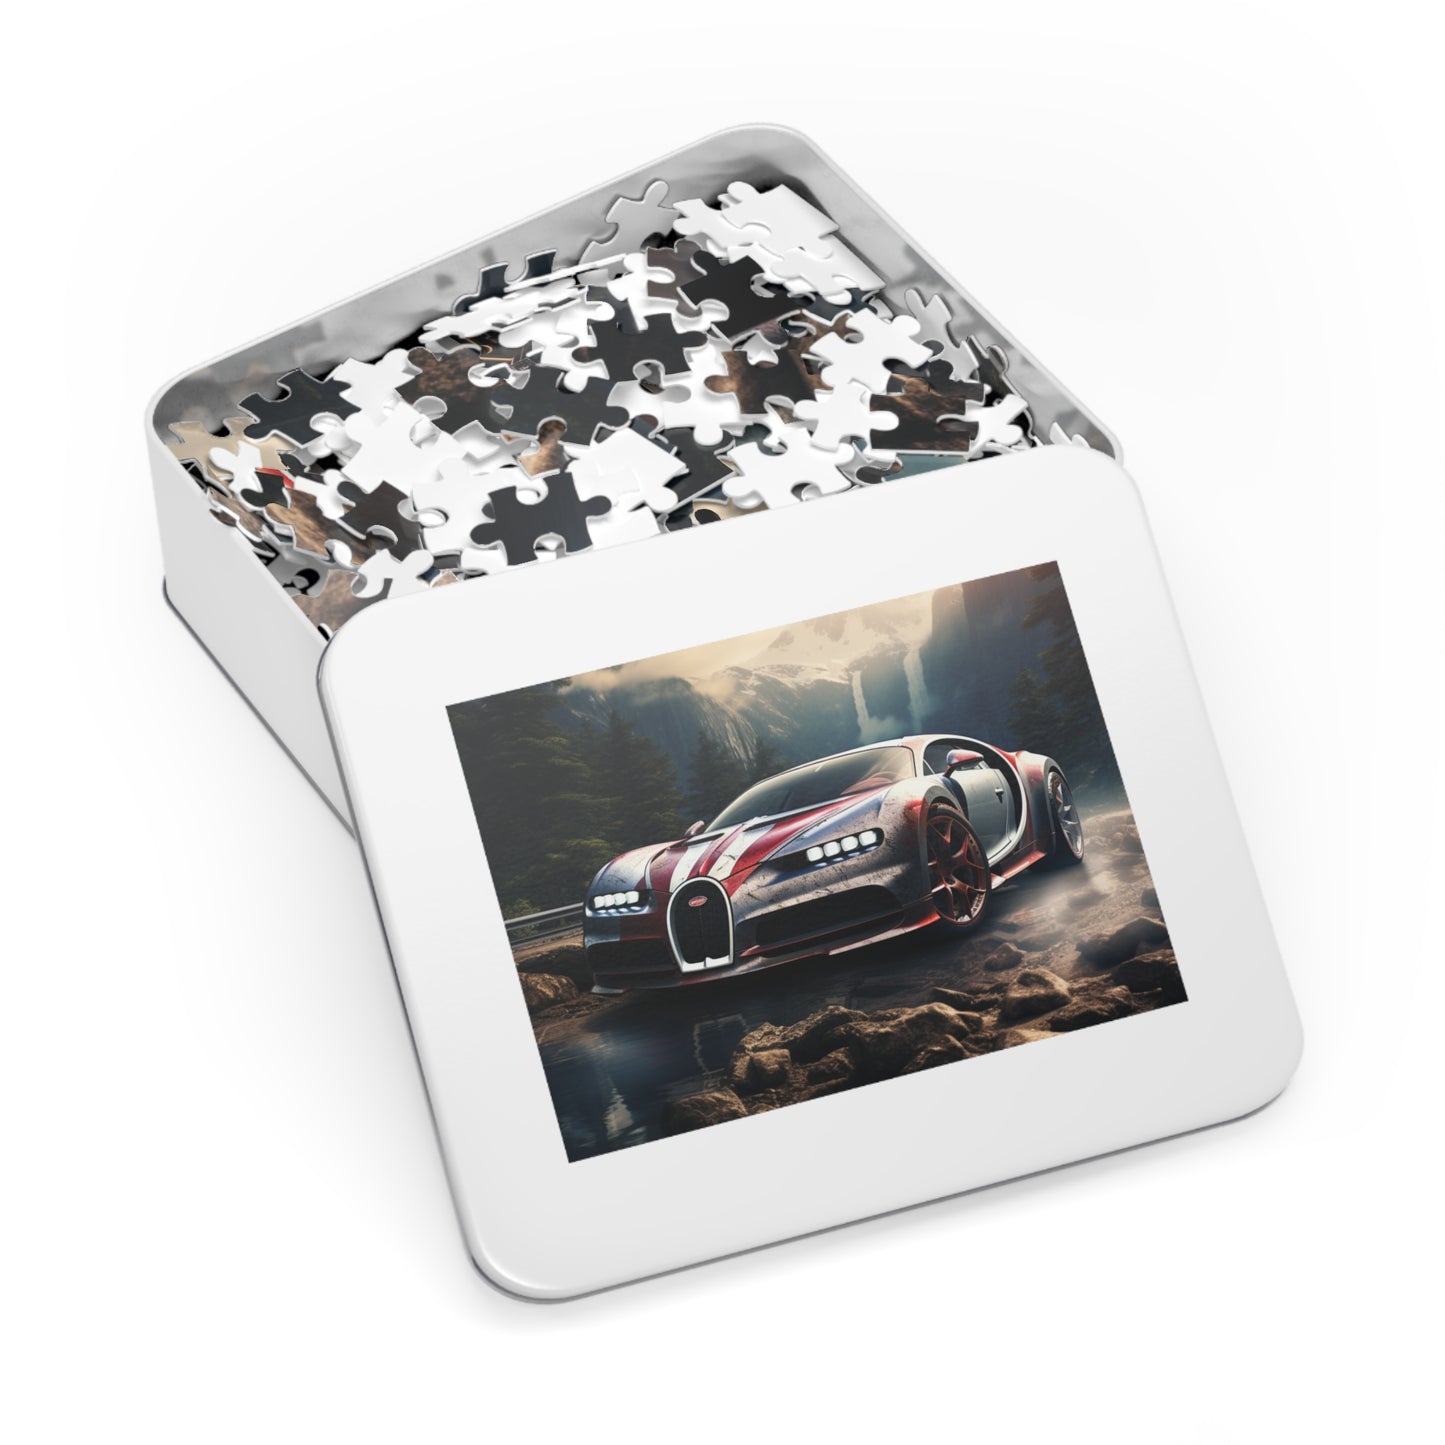 Jigsaw Puzzle (30, 110, 252, 500,1000-Piece) Bugatti Waterfall 4